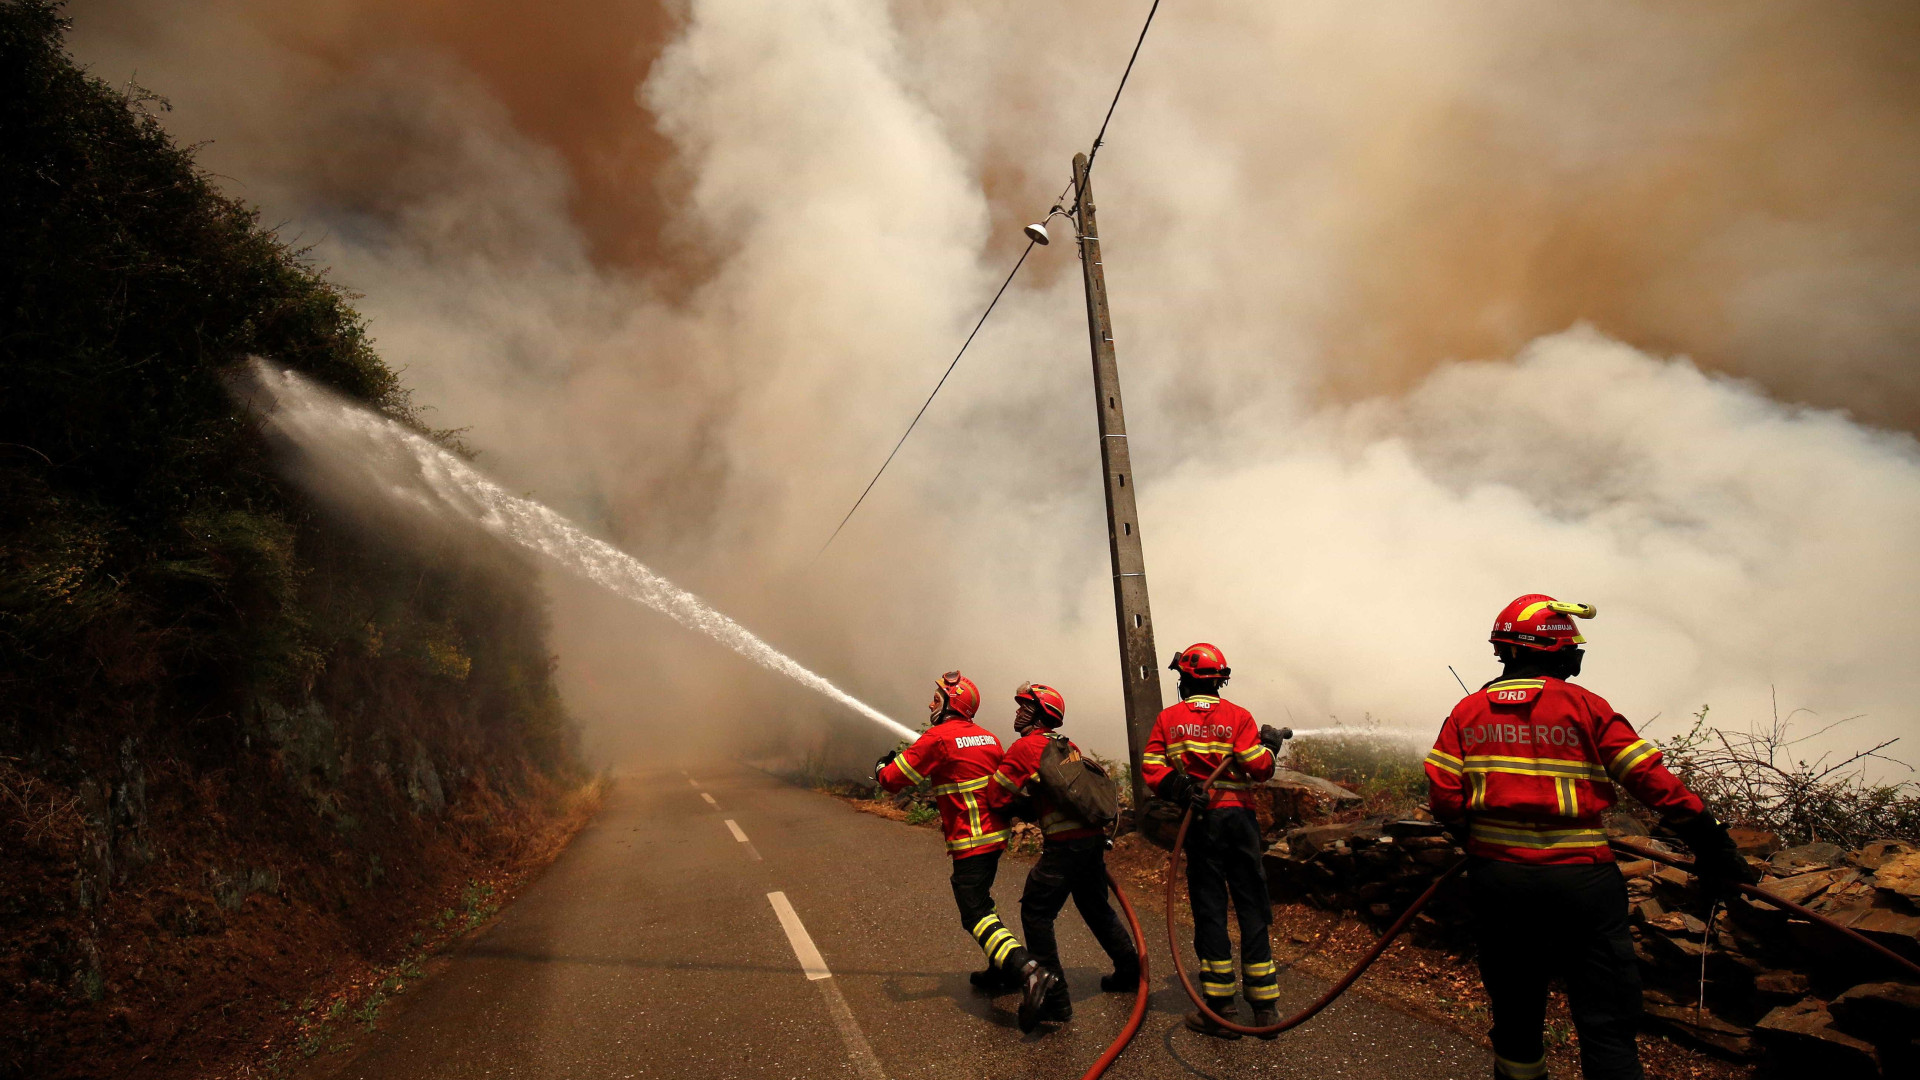 Portugal ordena investigação sobre incêndio florestal